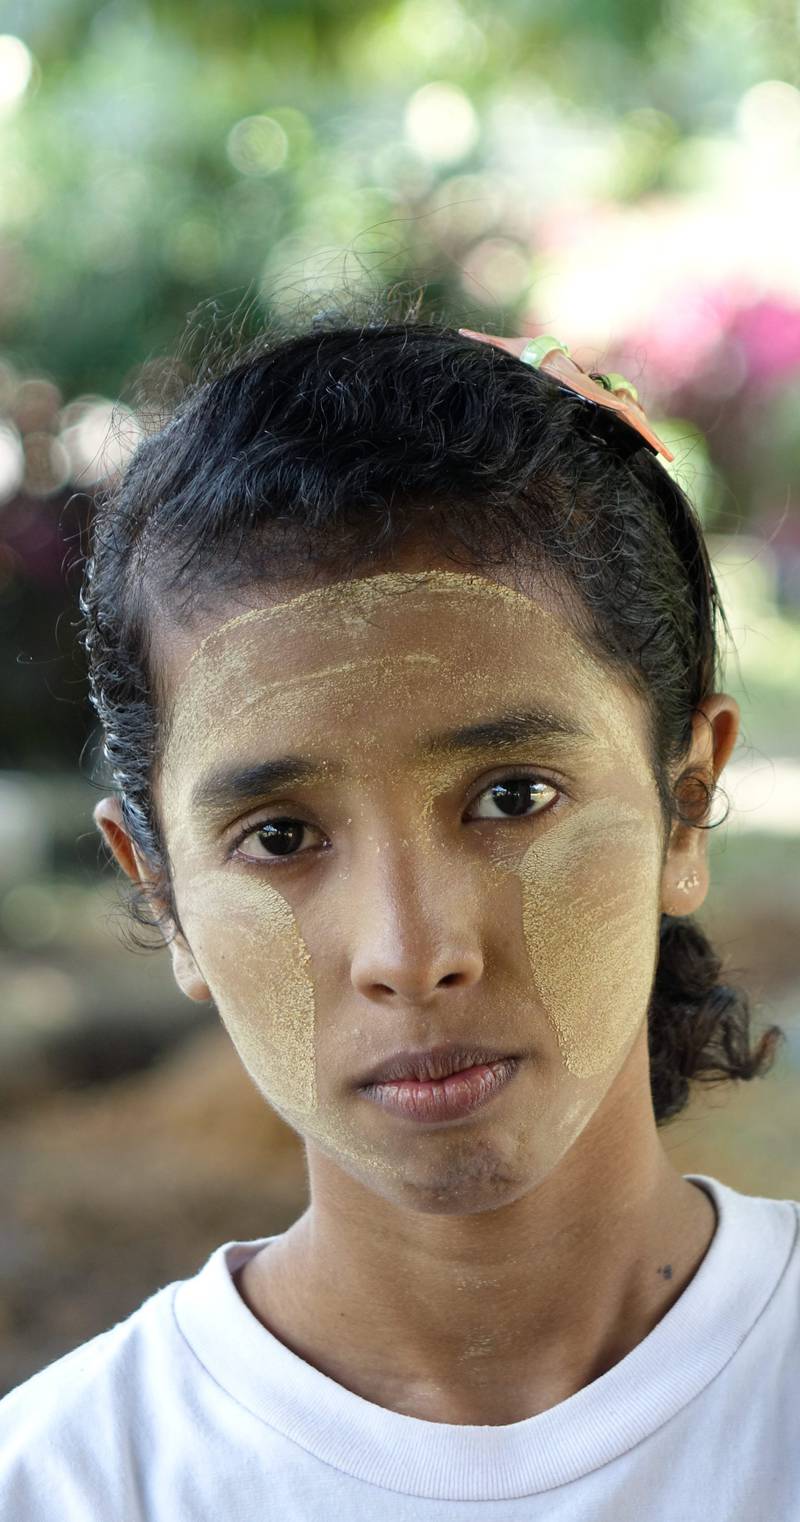 Zin (18) skal stemme for første gang. Hun sluttet på skolen da hun var 13 år, og håper det blir slutt på barnearbeid. FOTO: DAVID BRÆNDELAND